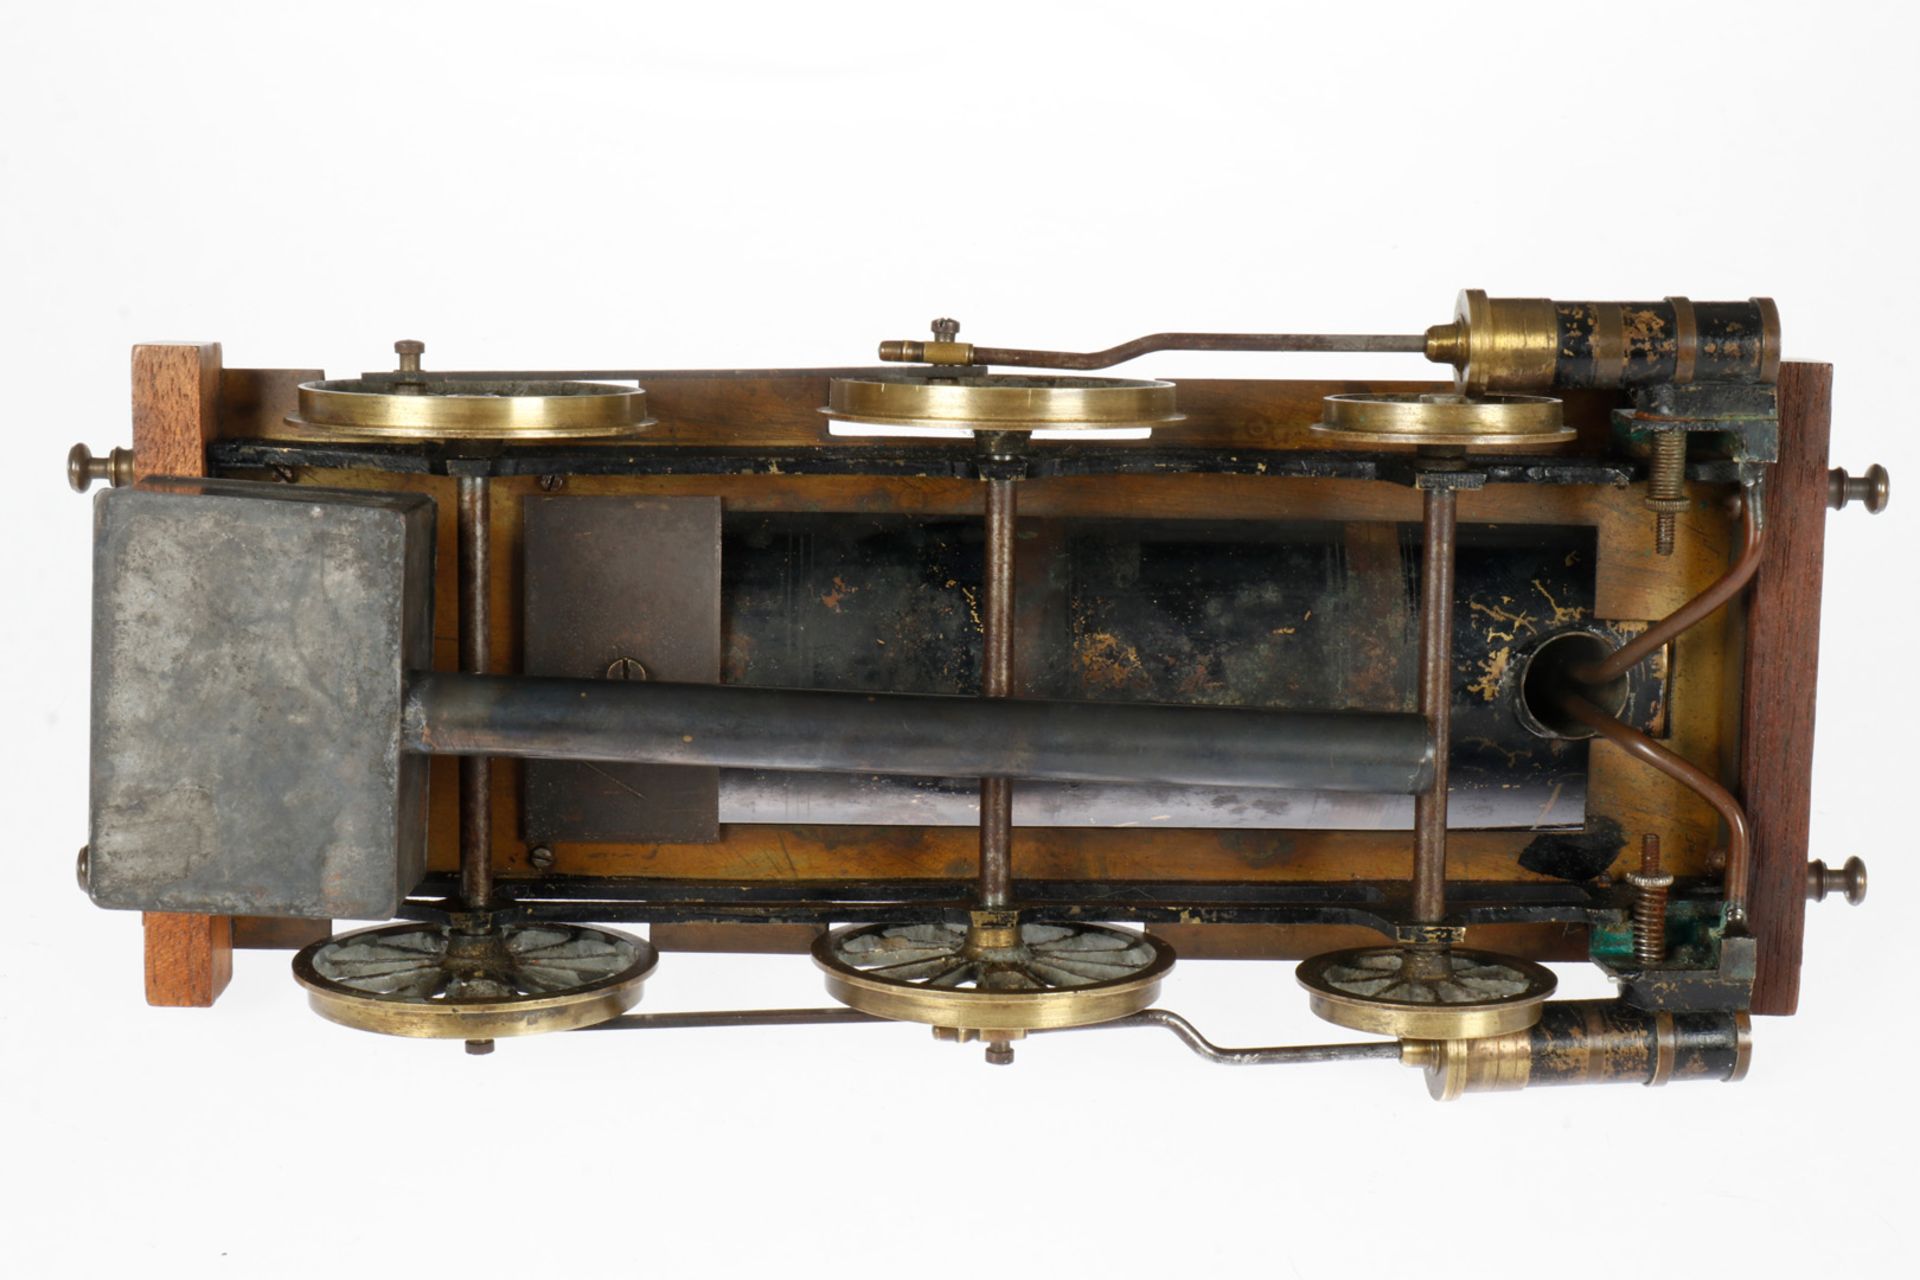 Radiguet 1-B Dampflok, uralt, spiritusbetrieben, Spurweite 85, 2 feststehende Zylinder, mit - Image 4 of 5